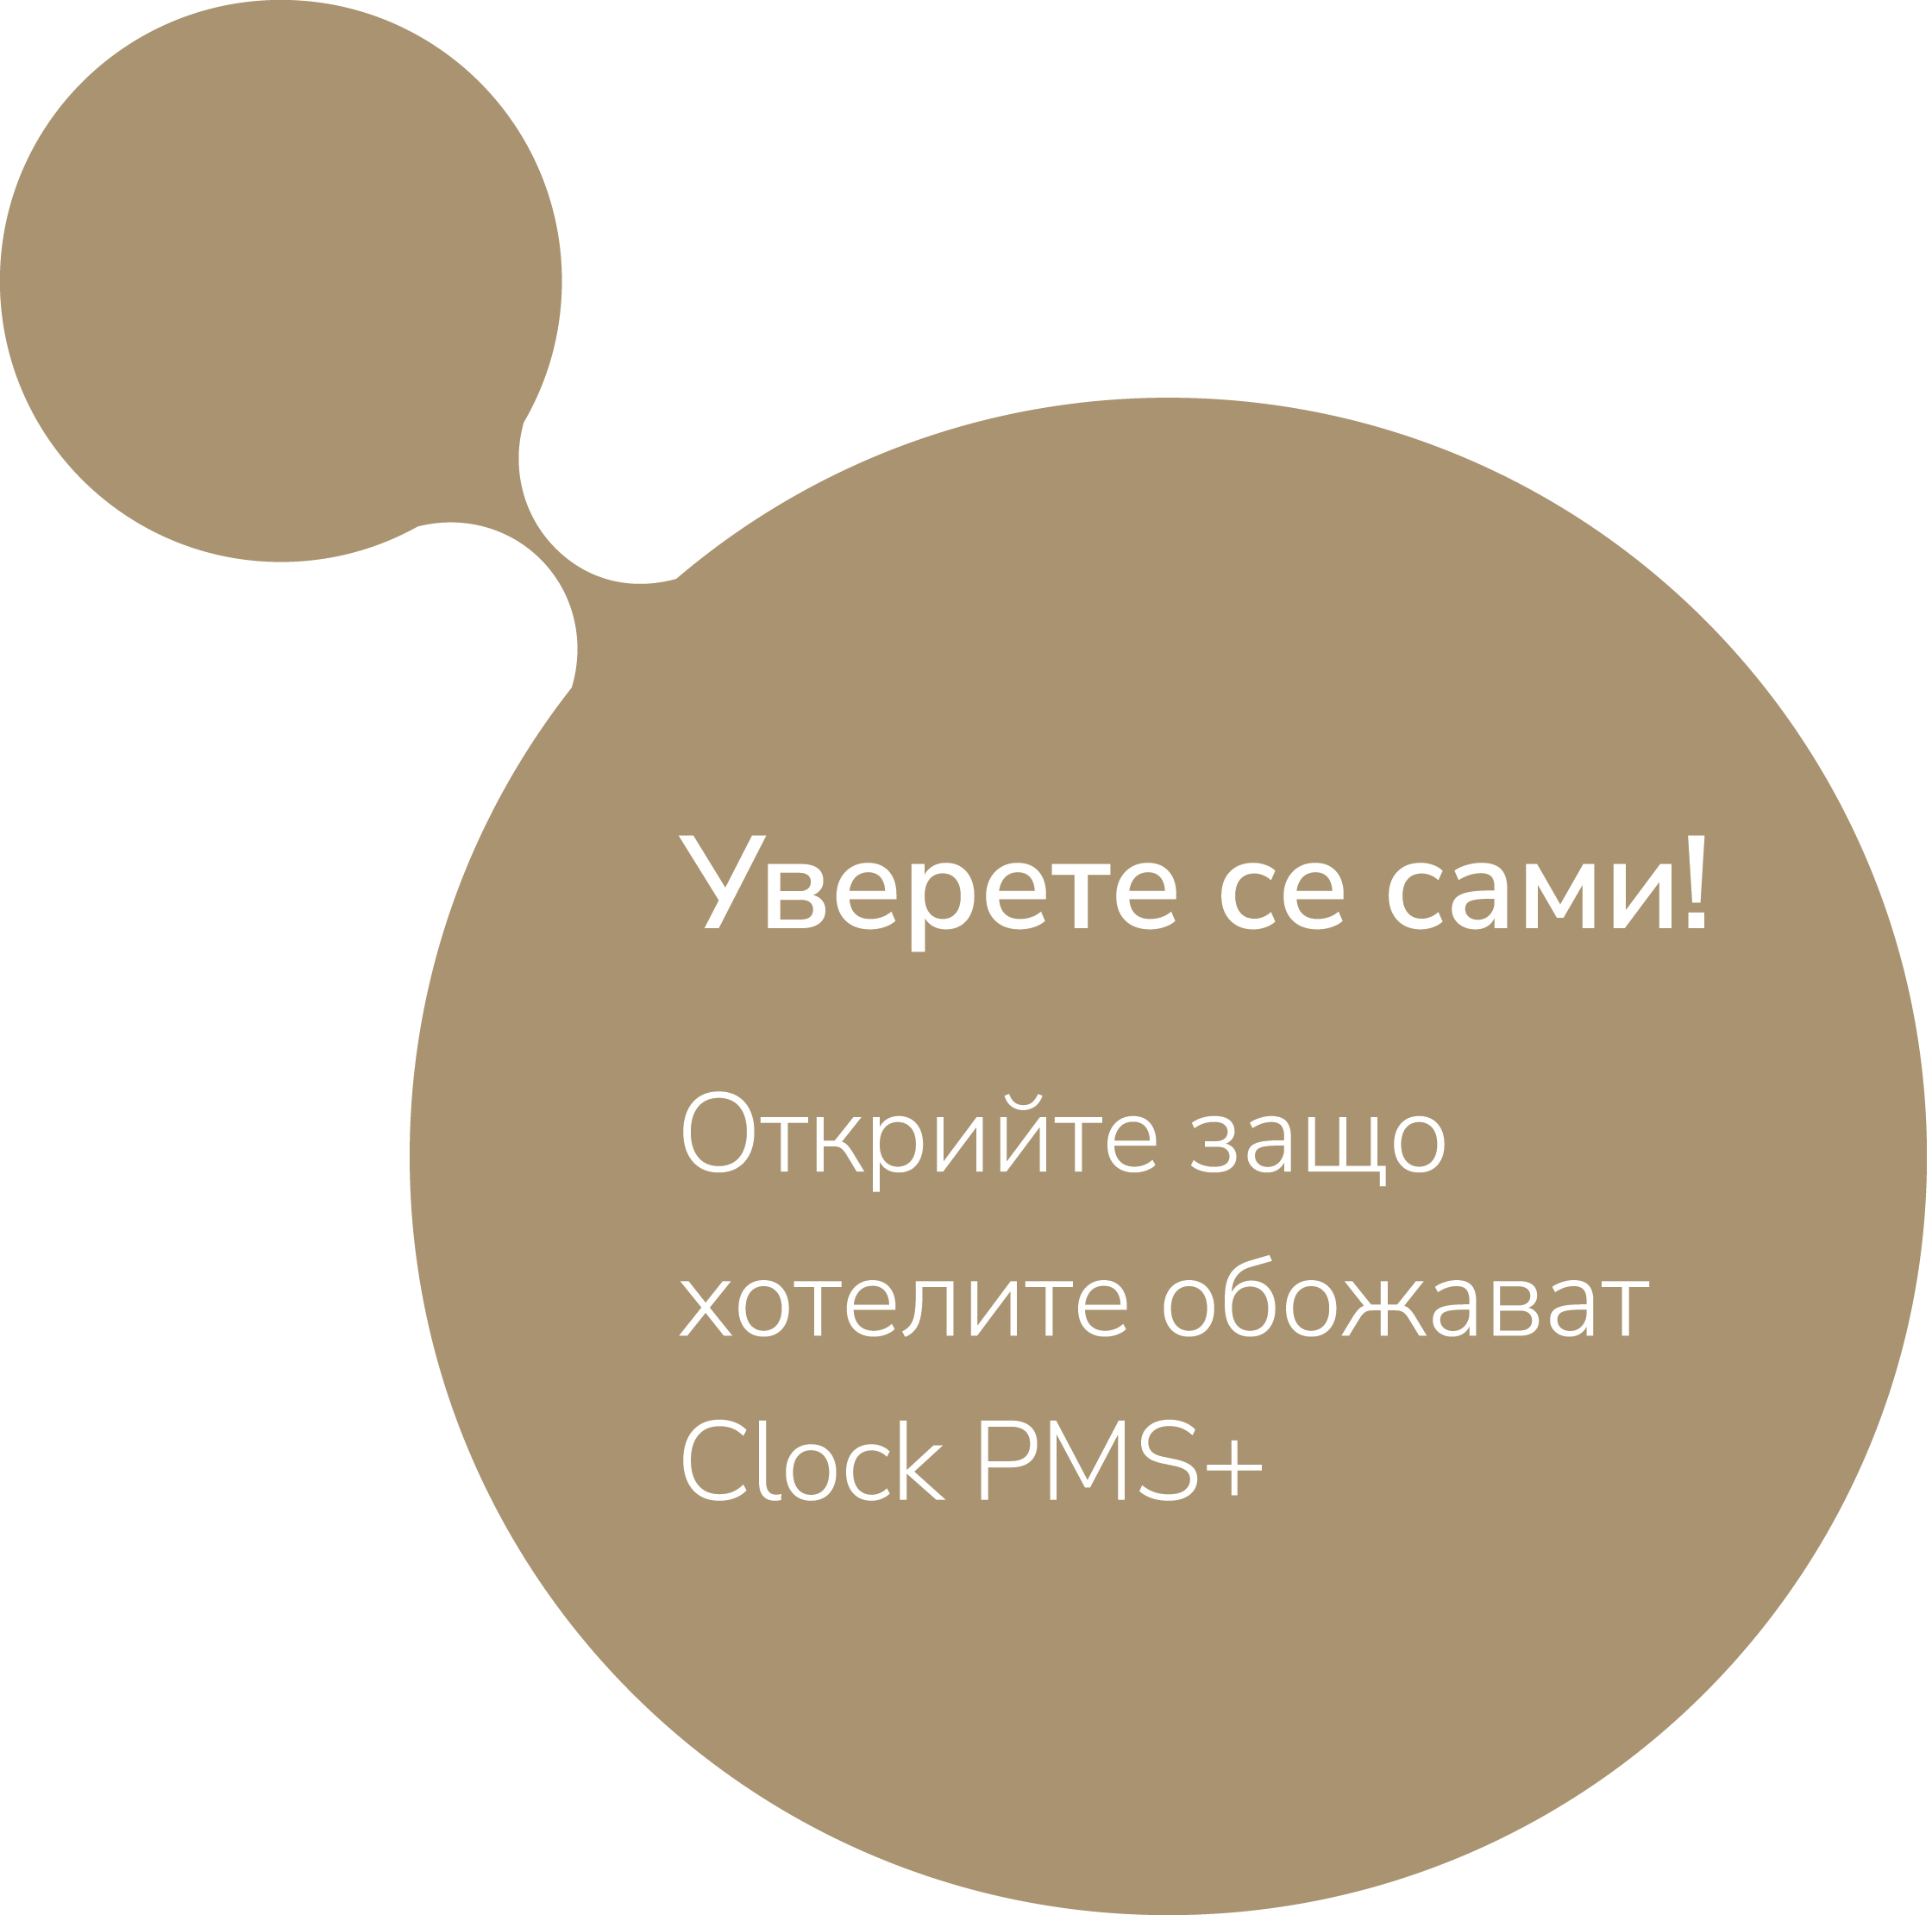 Уверете се сами! Открийте защо хотелите обожават Clock PMS+